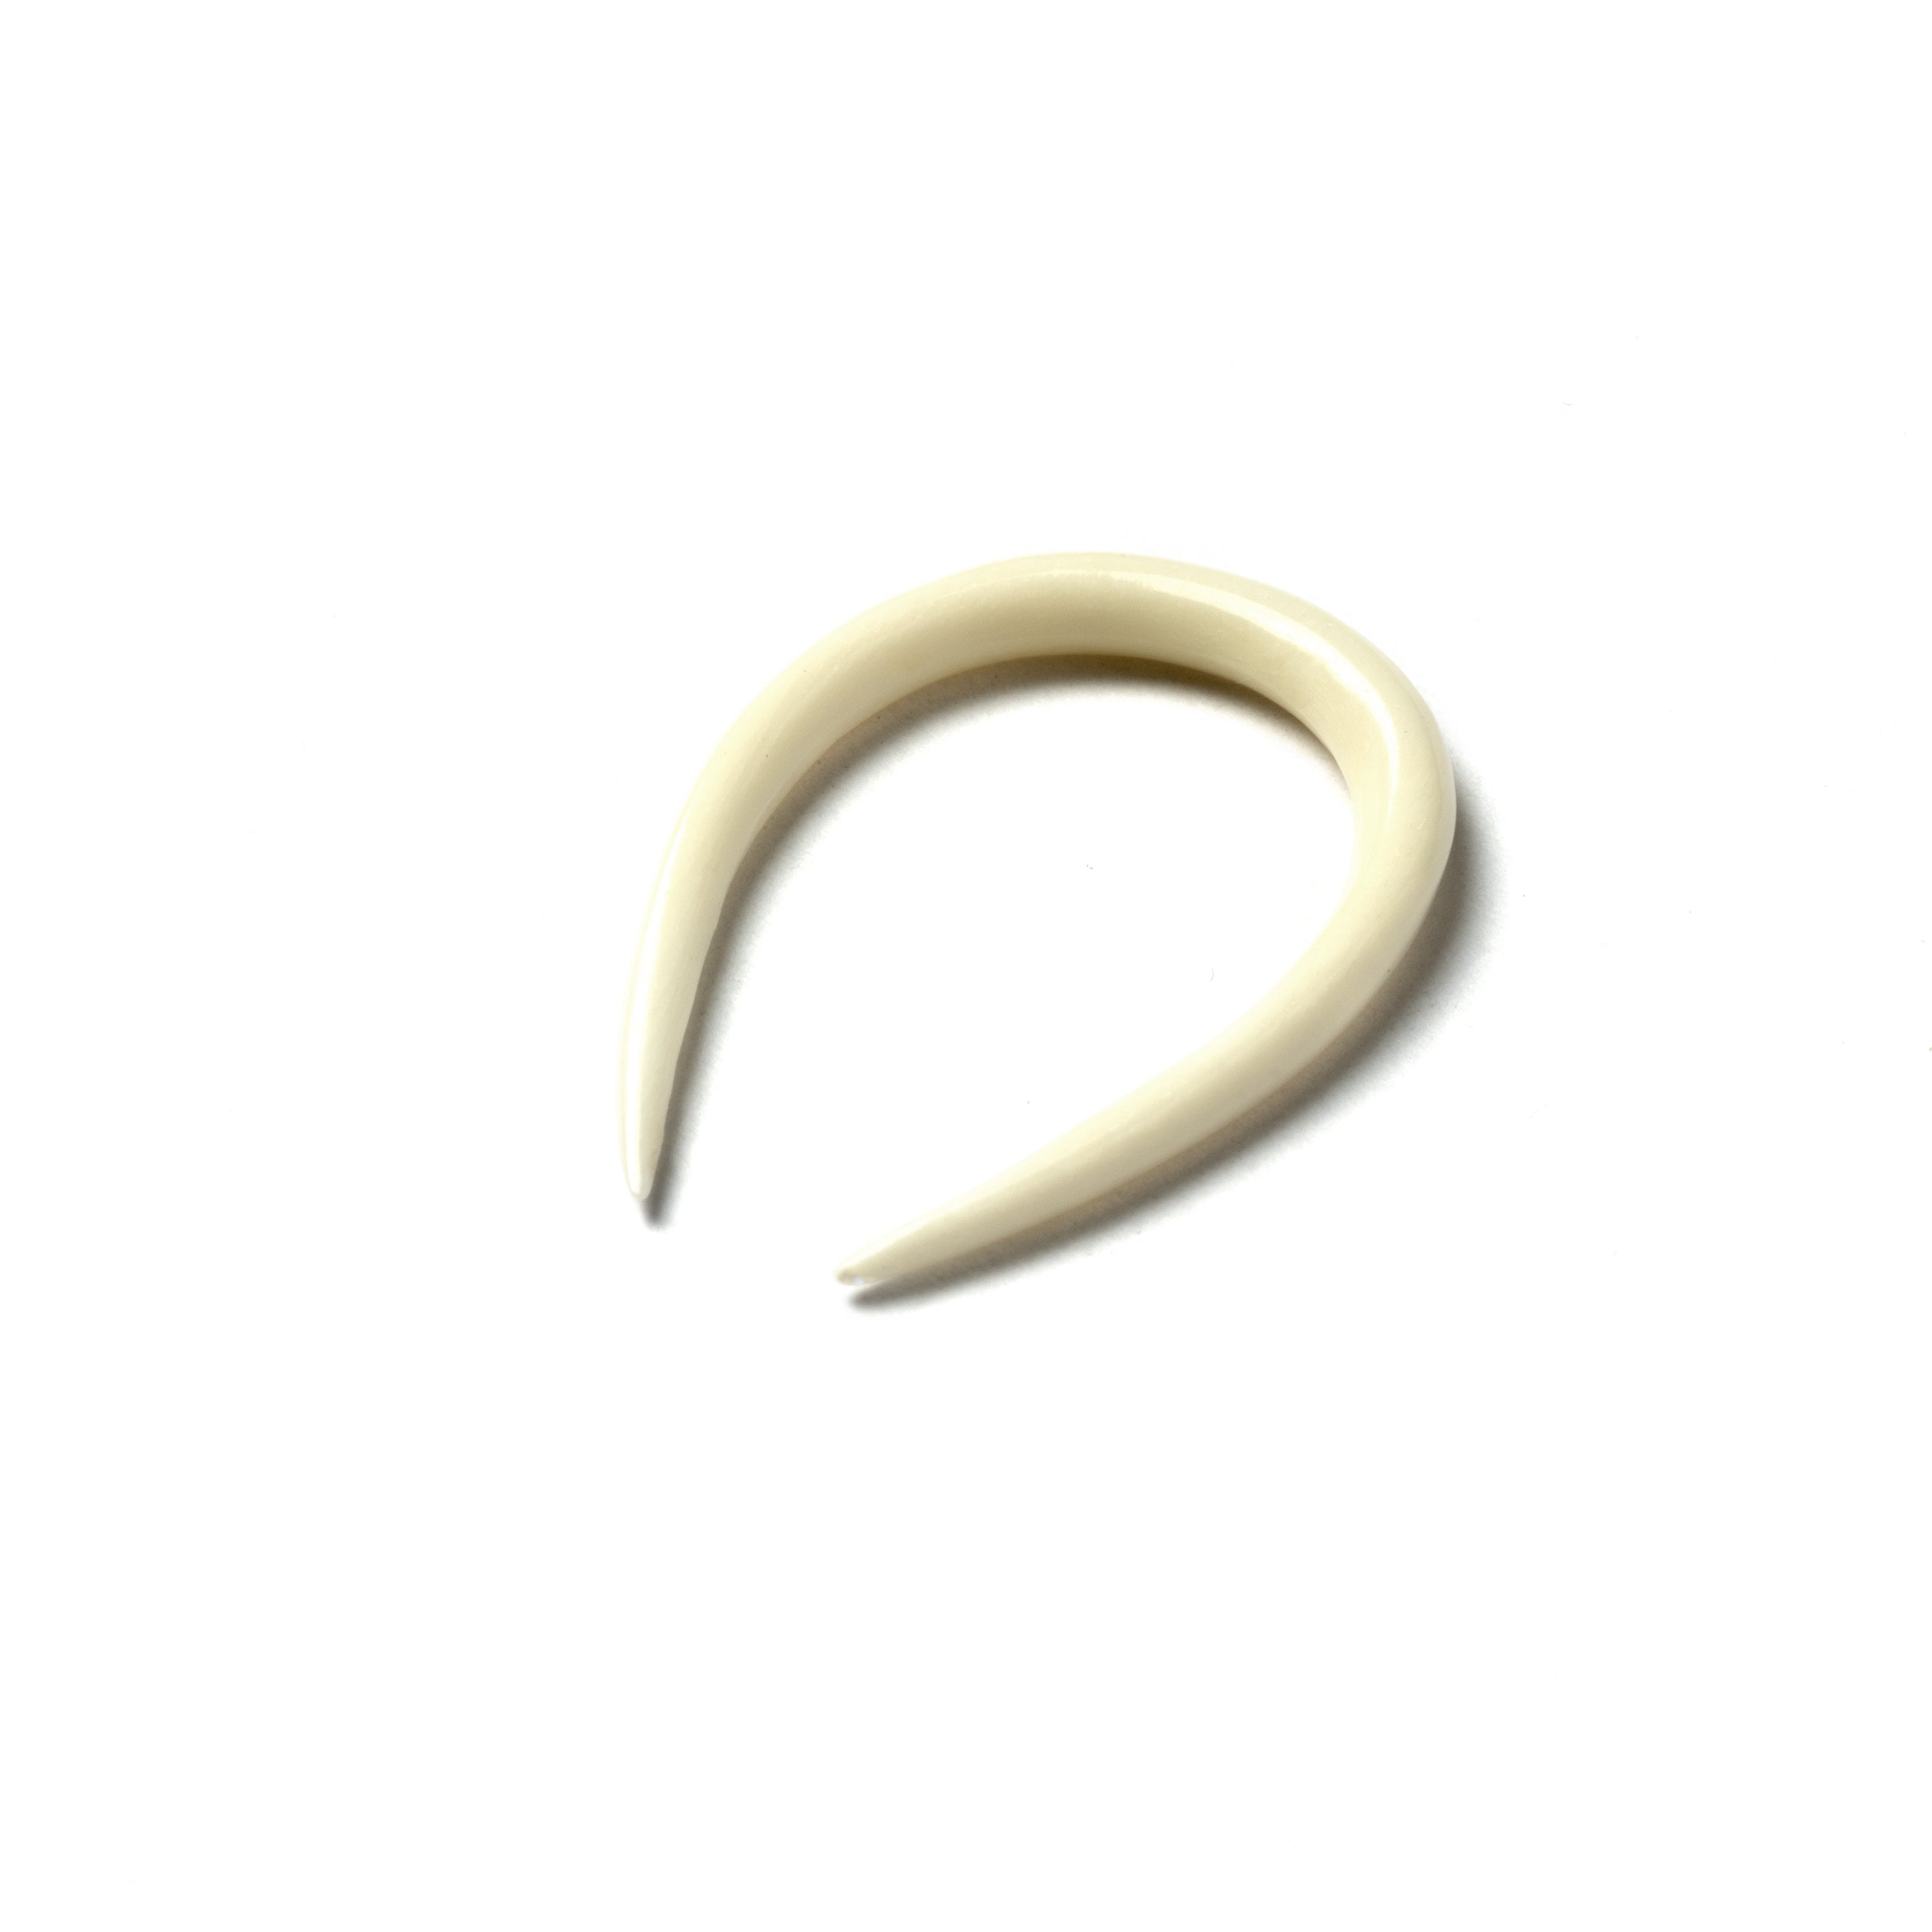 Horseshoe Ear Stretchers - Bone 